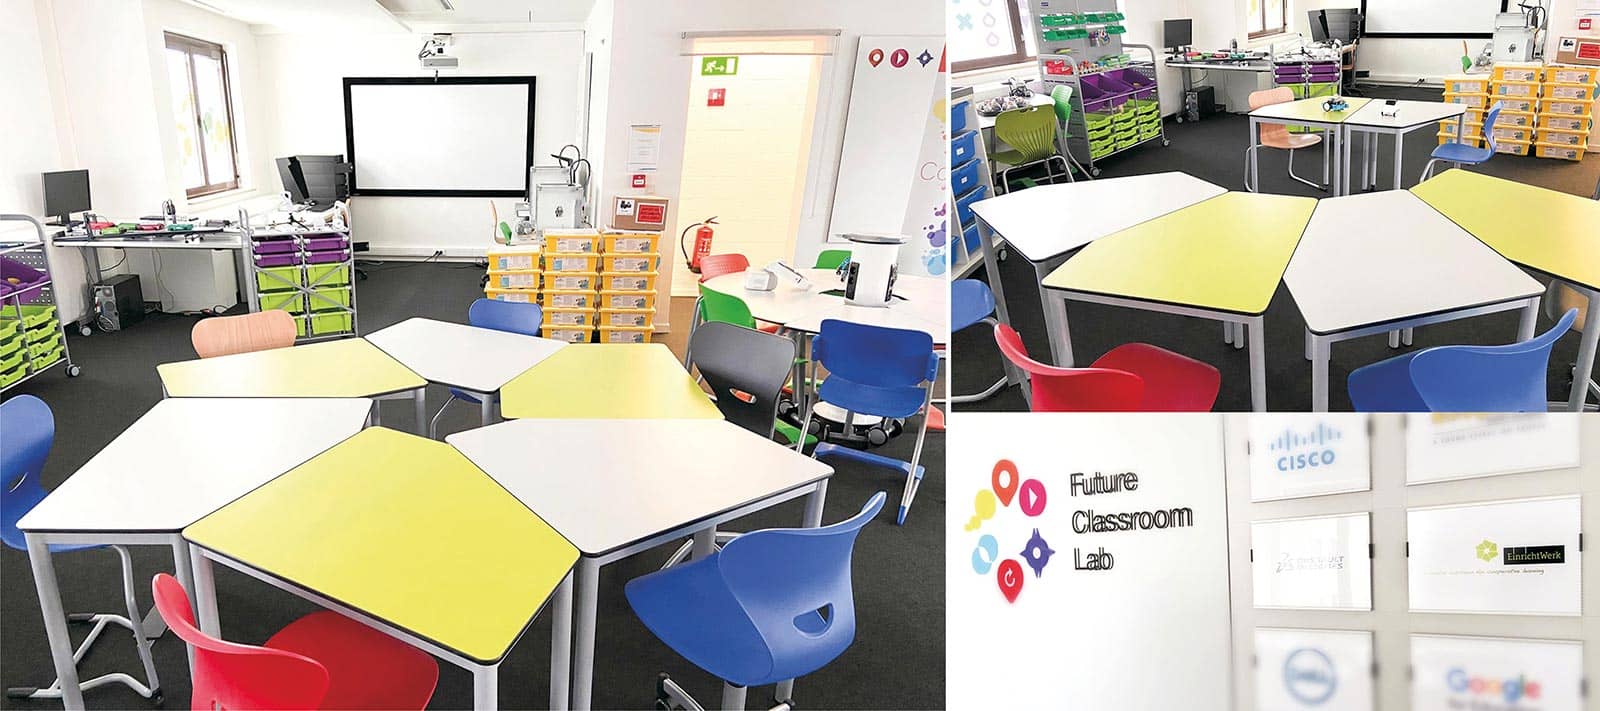 Future Classroom Lab: optimale Förderung von Schülerinnen und Schülern in allen Aspekten des Lernens